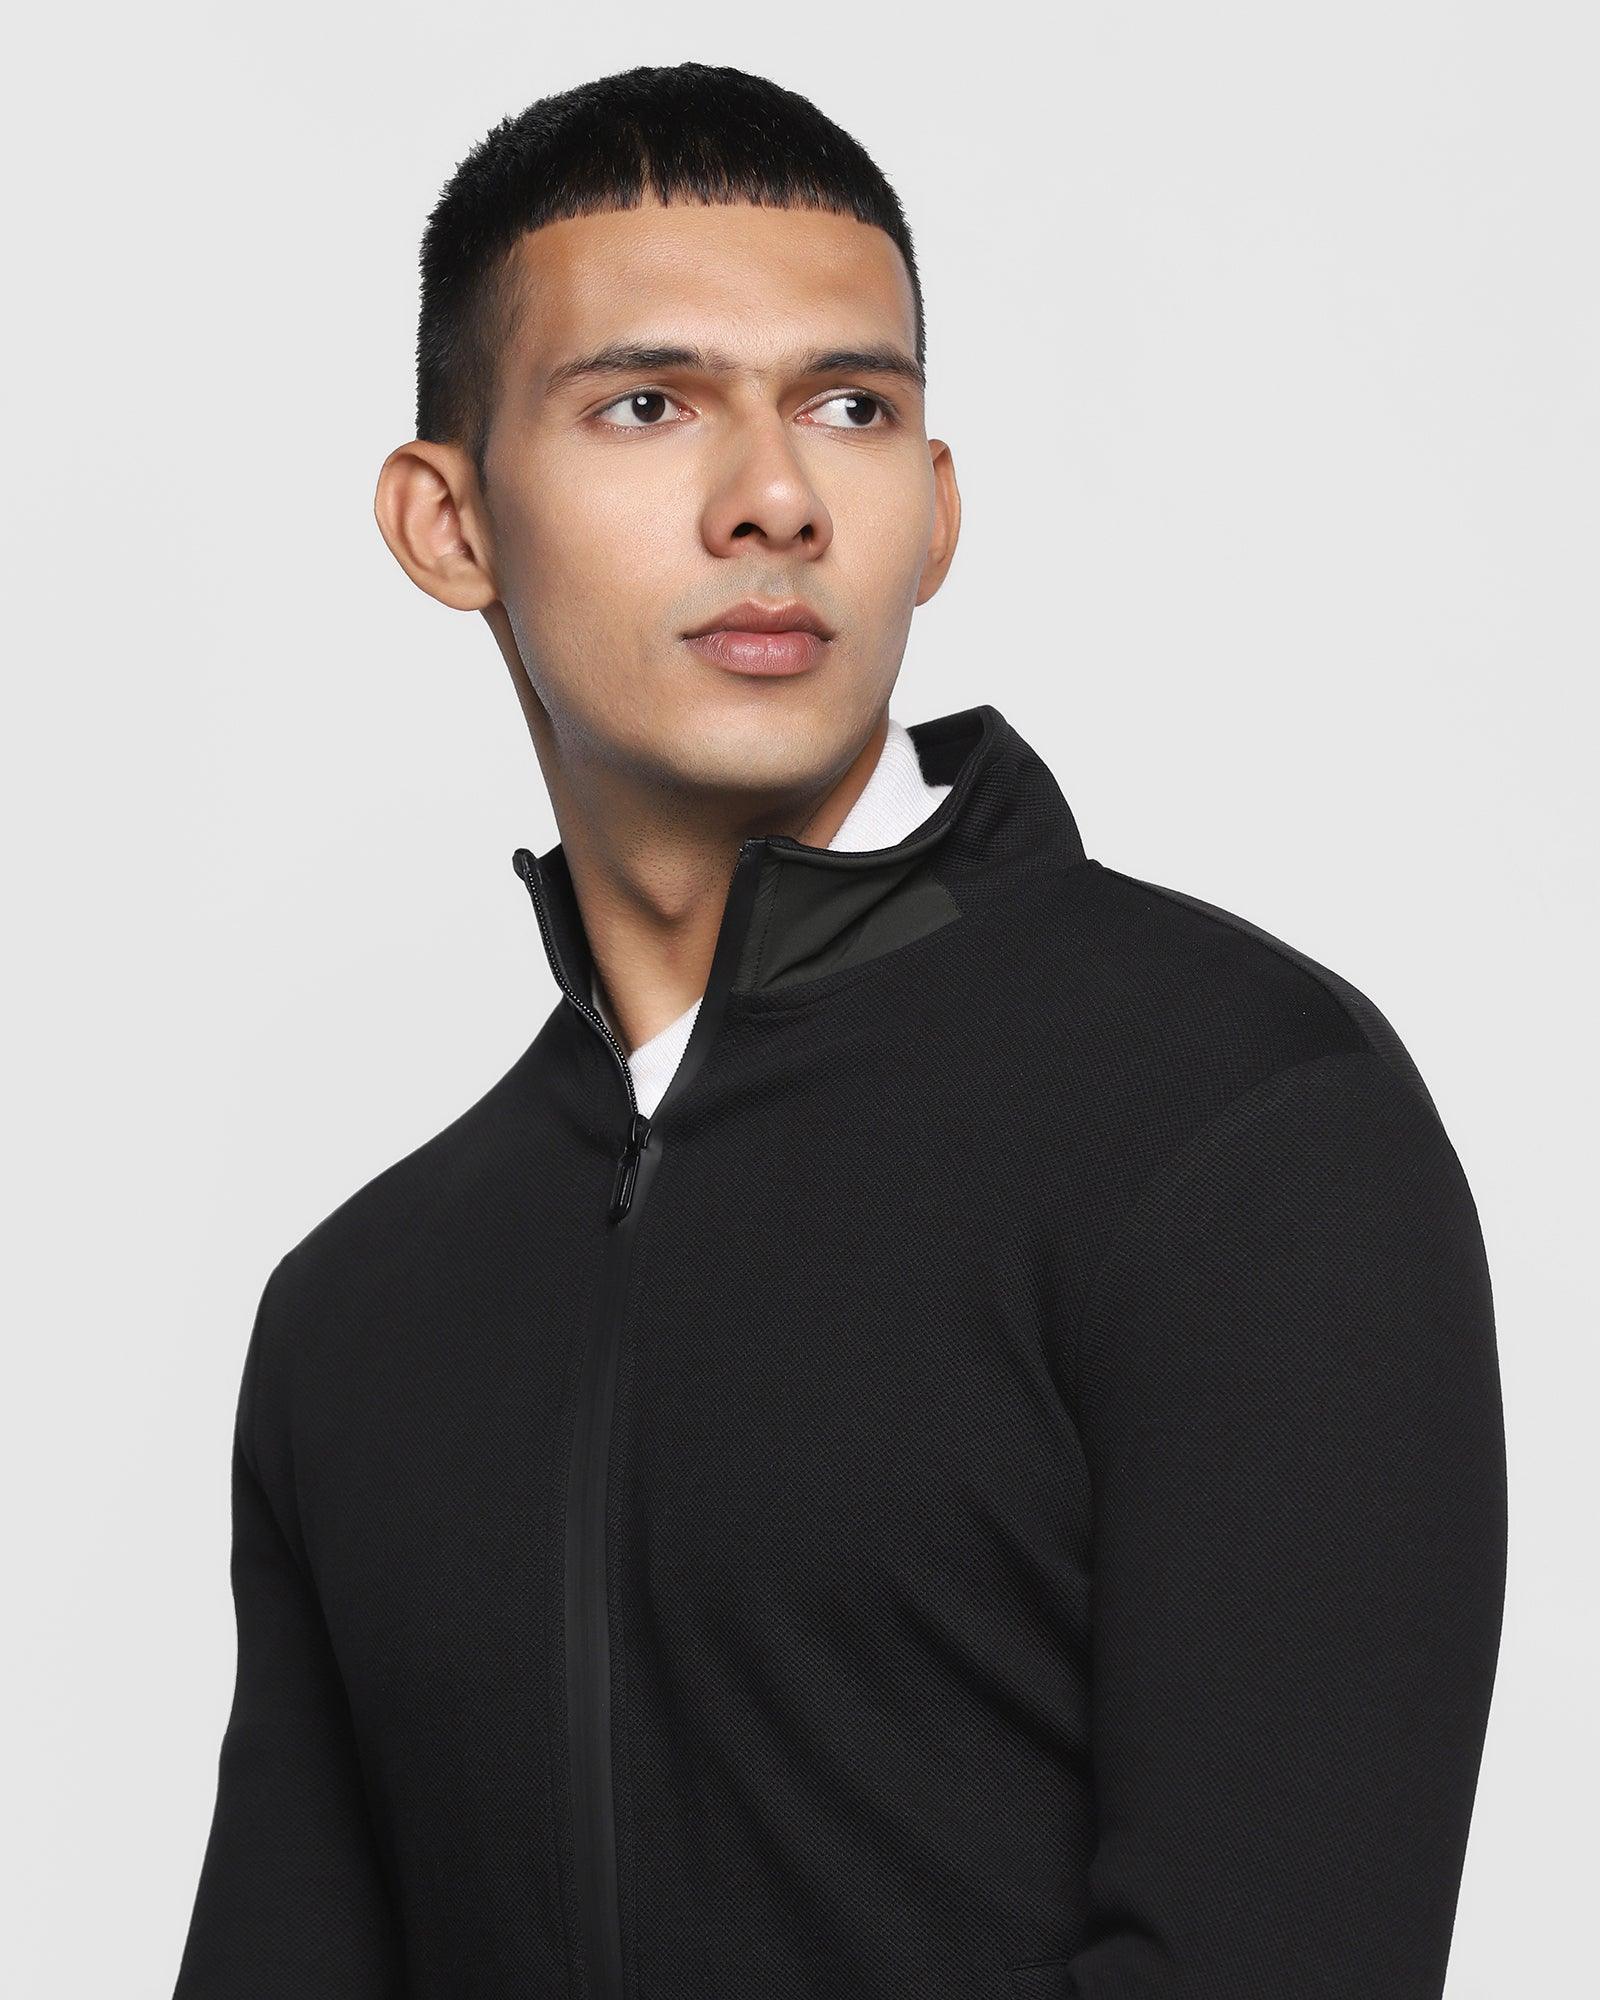 Stylized Collar Black Solid Sweatshirt - Lich